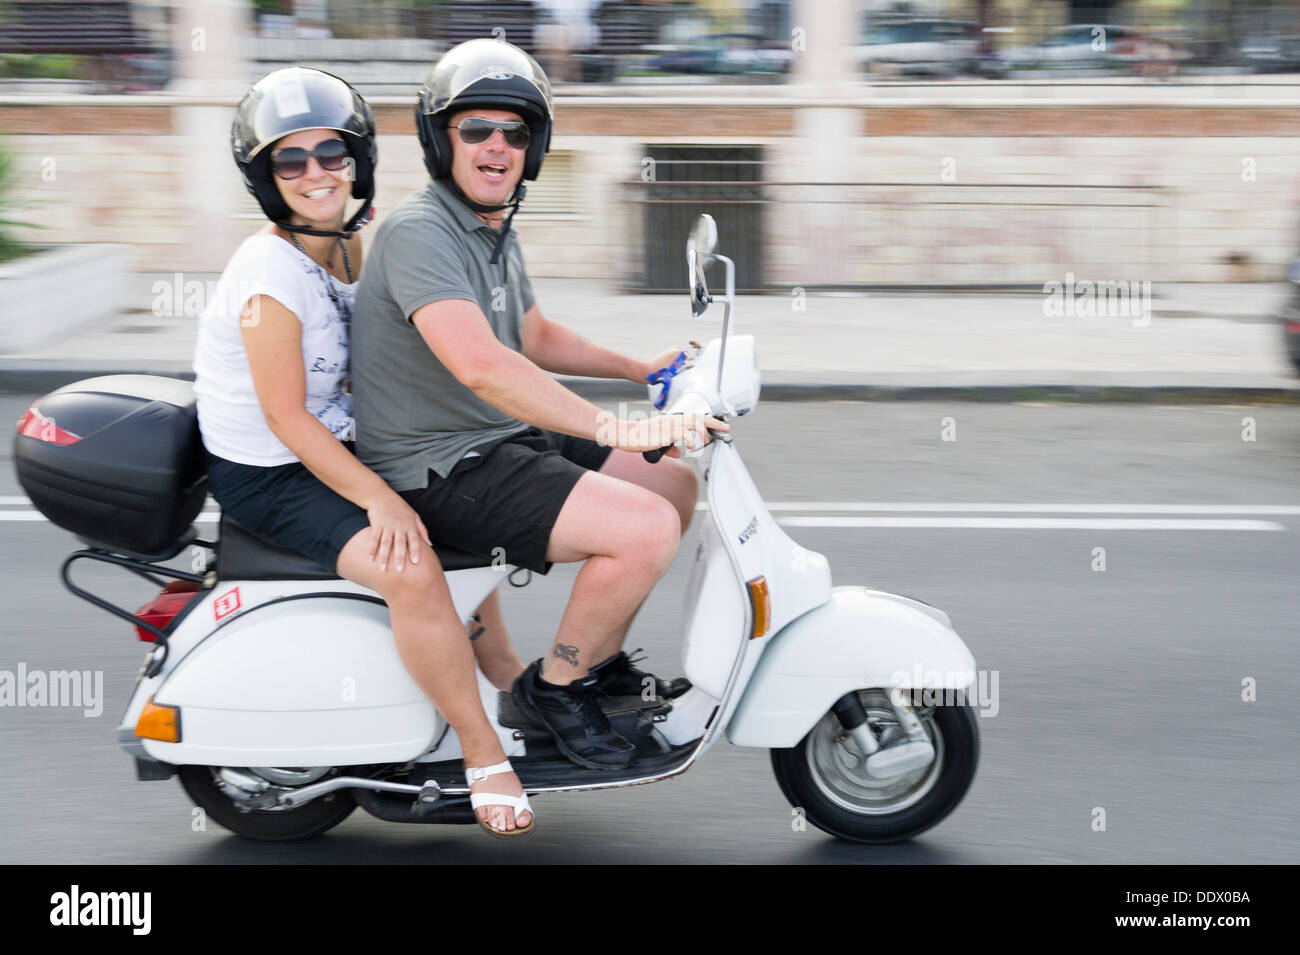 Italian La dolce Vita couple riding classic iconic vespa scooter Stock Photo